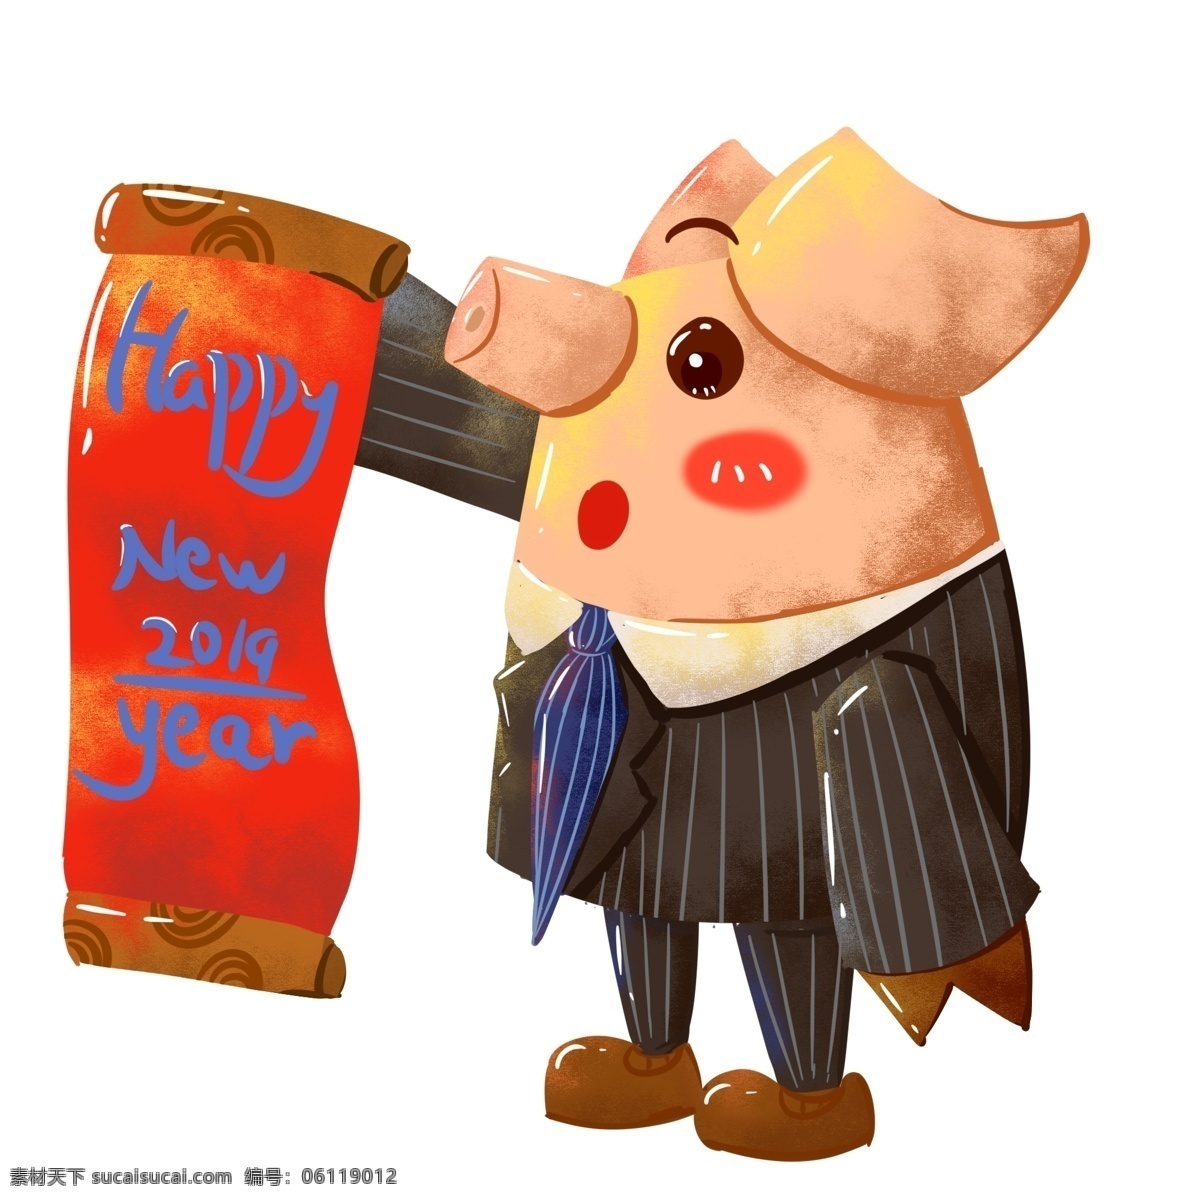 2019 商务 新年 猪 ip 商用 元素 西装 卡通 可爱 猪ip 可商用元素